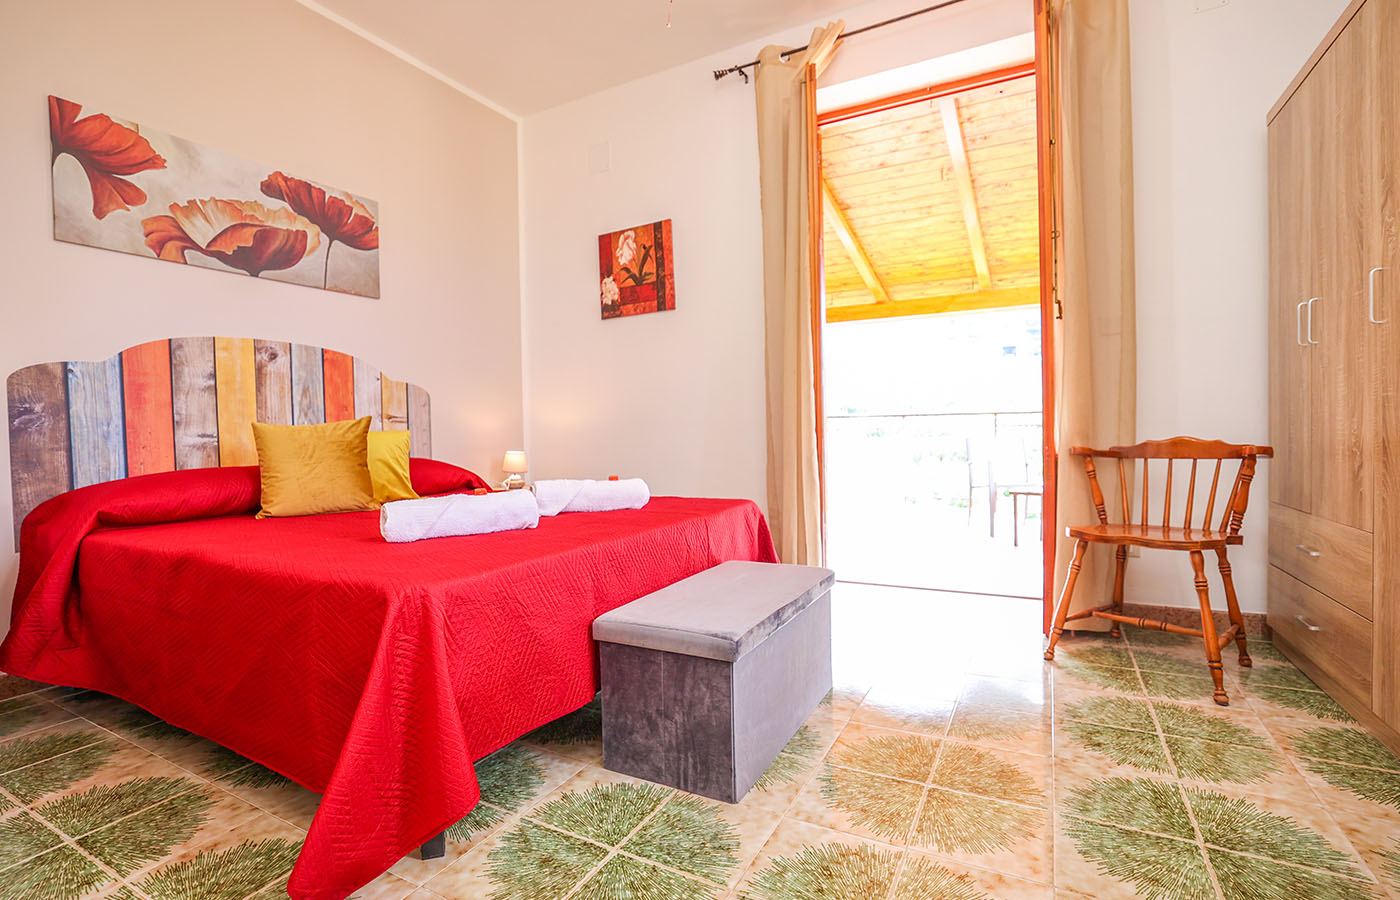 Camera Melograno con vista giardino - trabia bed breakfast - b&b sicilia - alloggi turistici sicilia prezzi - Melograno bedroom